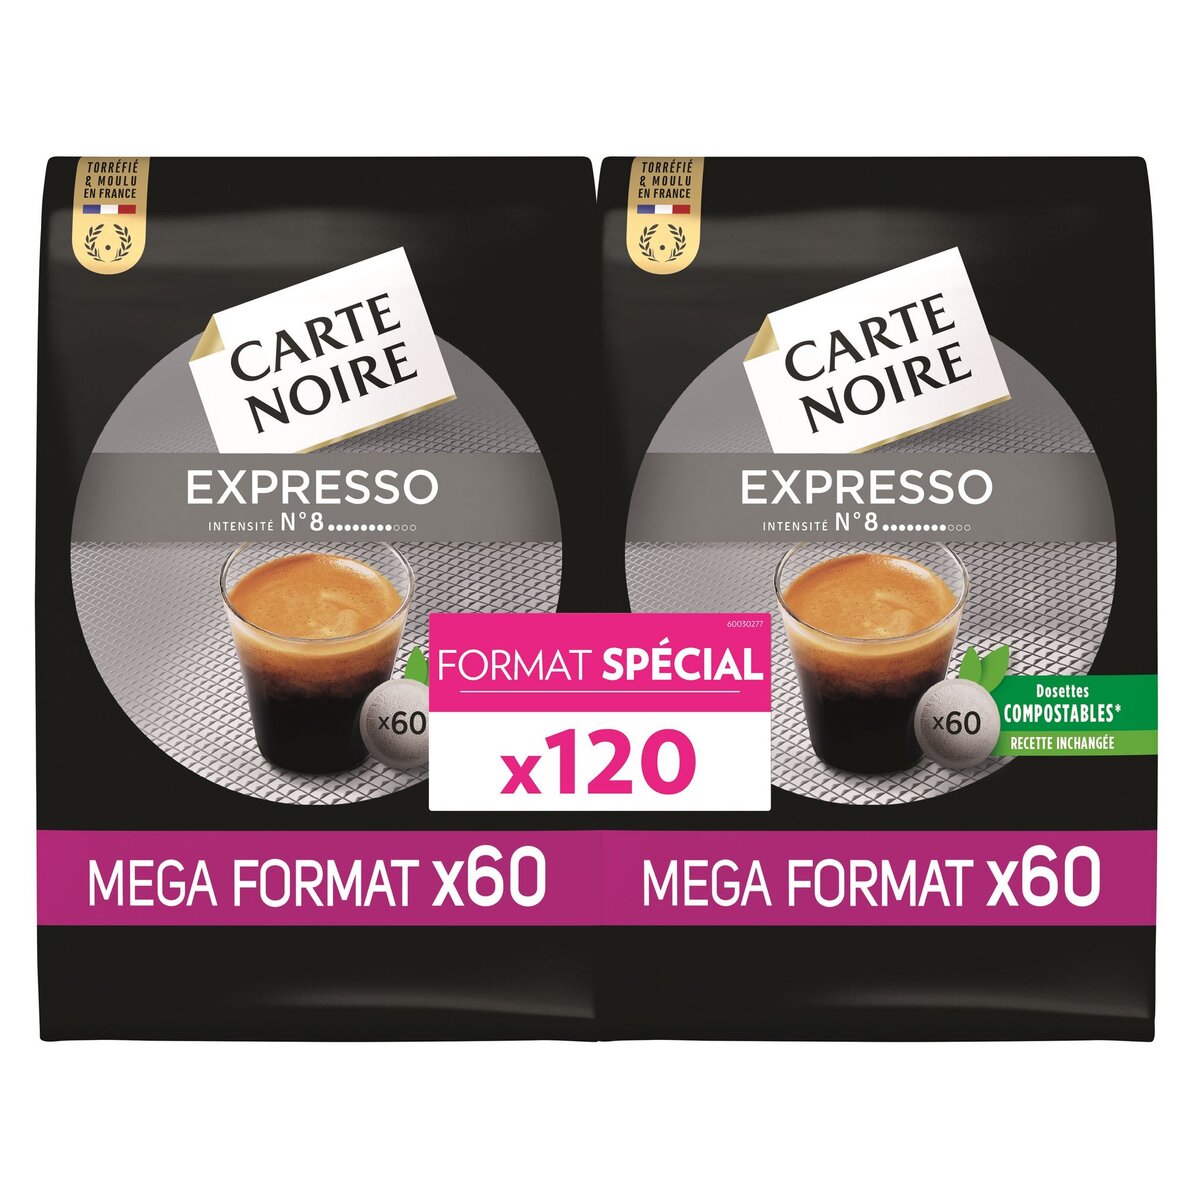 CARTE NOIRE Dosettes de café expresso intense N°8 compostables 2x60 dosettes 840g